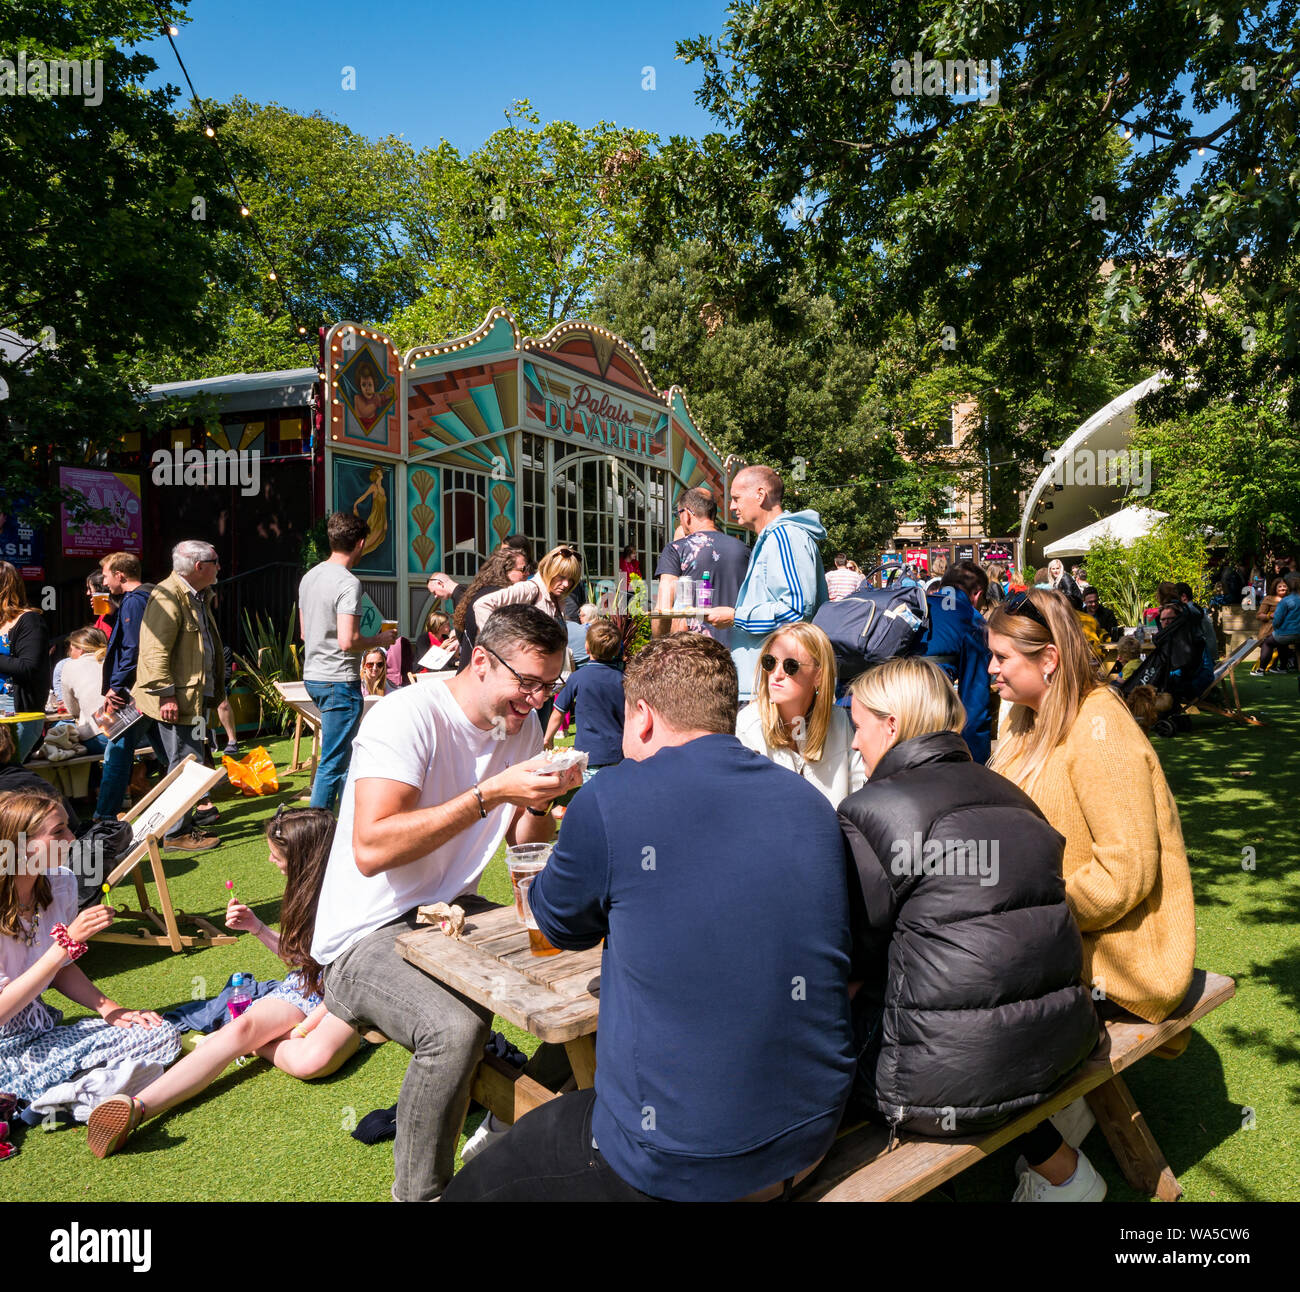 Menschen entspannend auf dem George Square Gardens auf der belebten sonnigen Tag in Edinburgh Festival Fringe, Schottland, Großbritannien Stockfoto